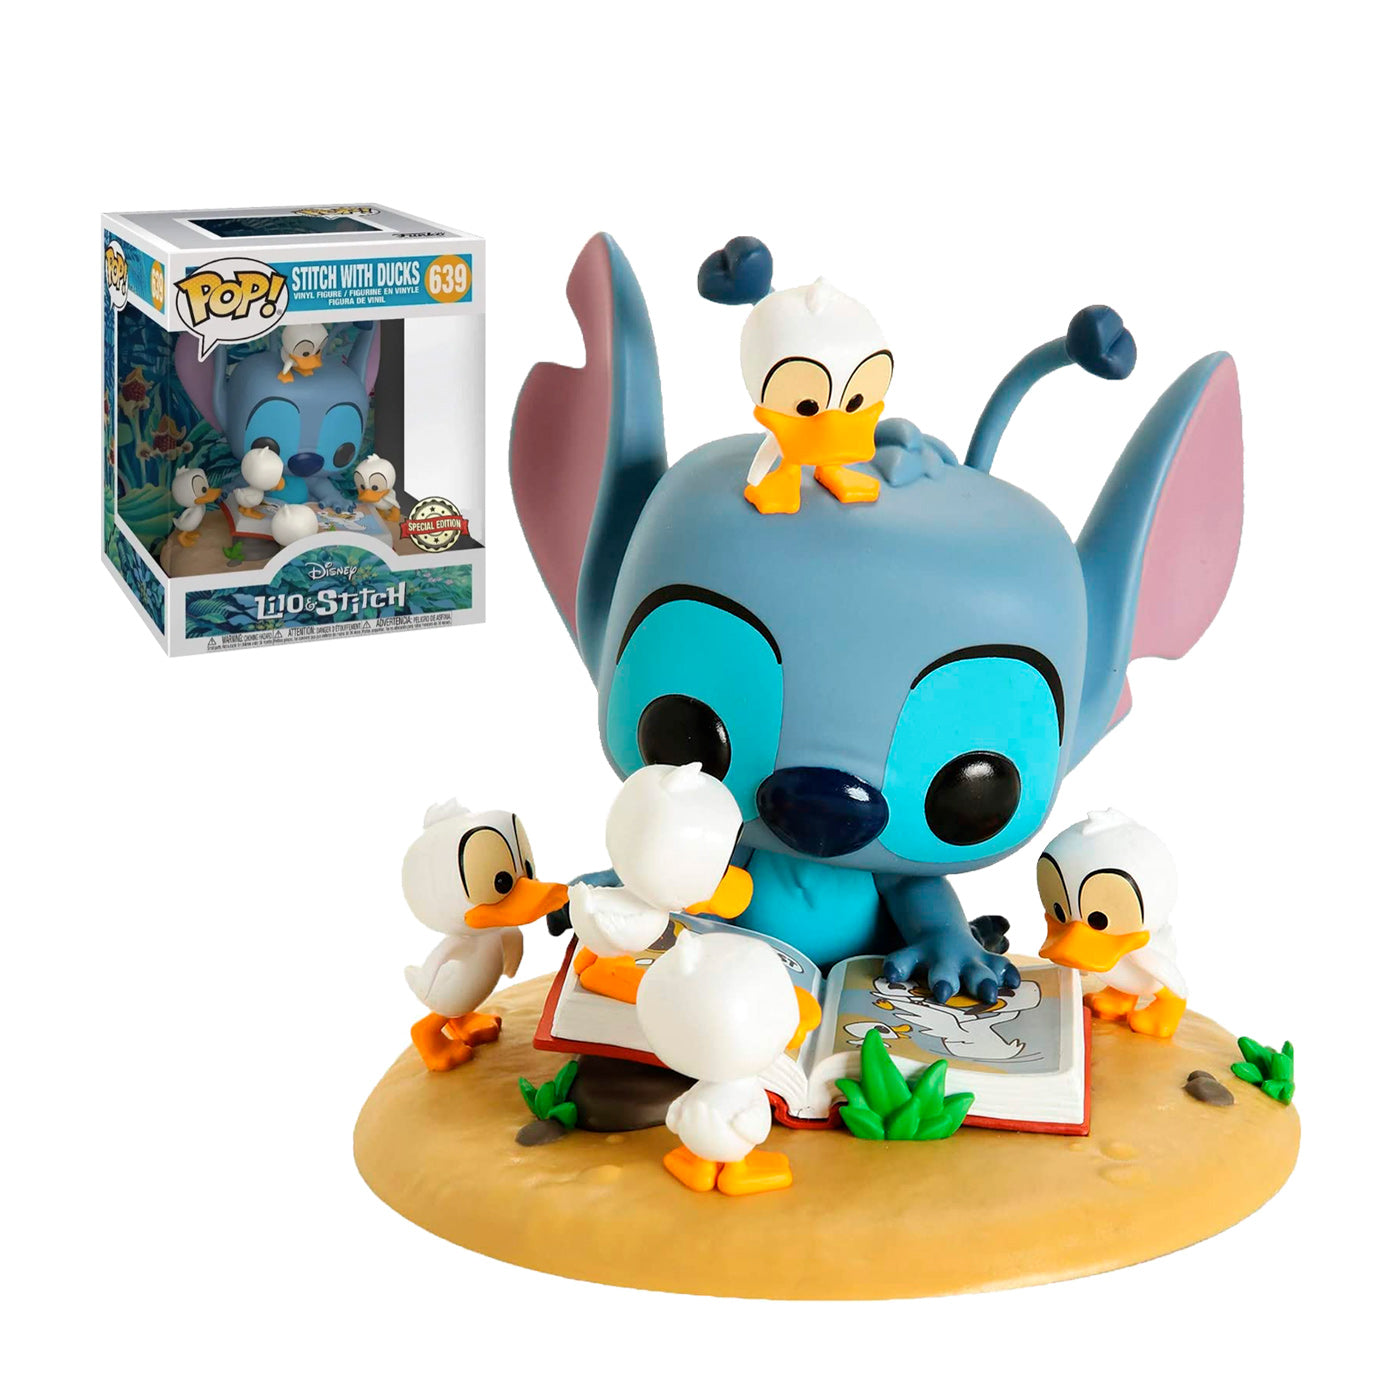 Funko Pop Stitch with Ducks (639)